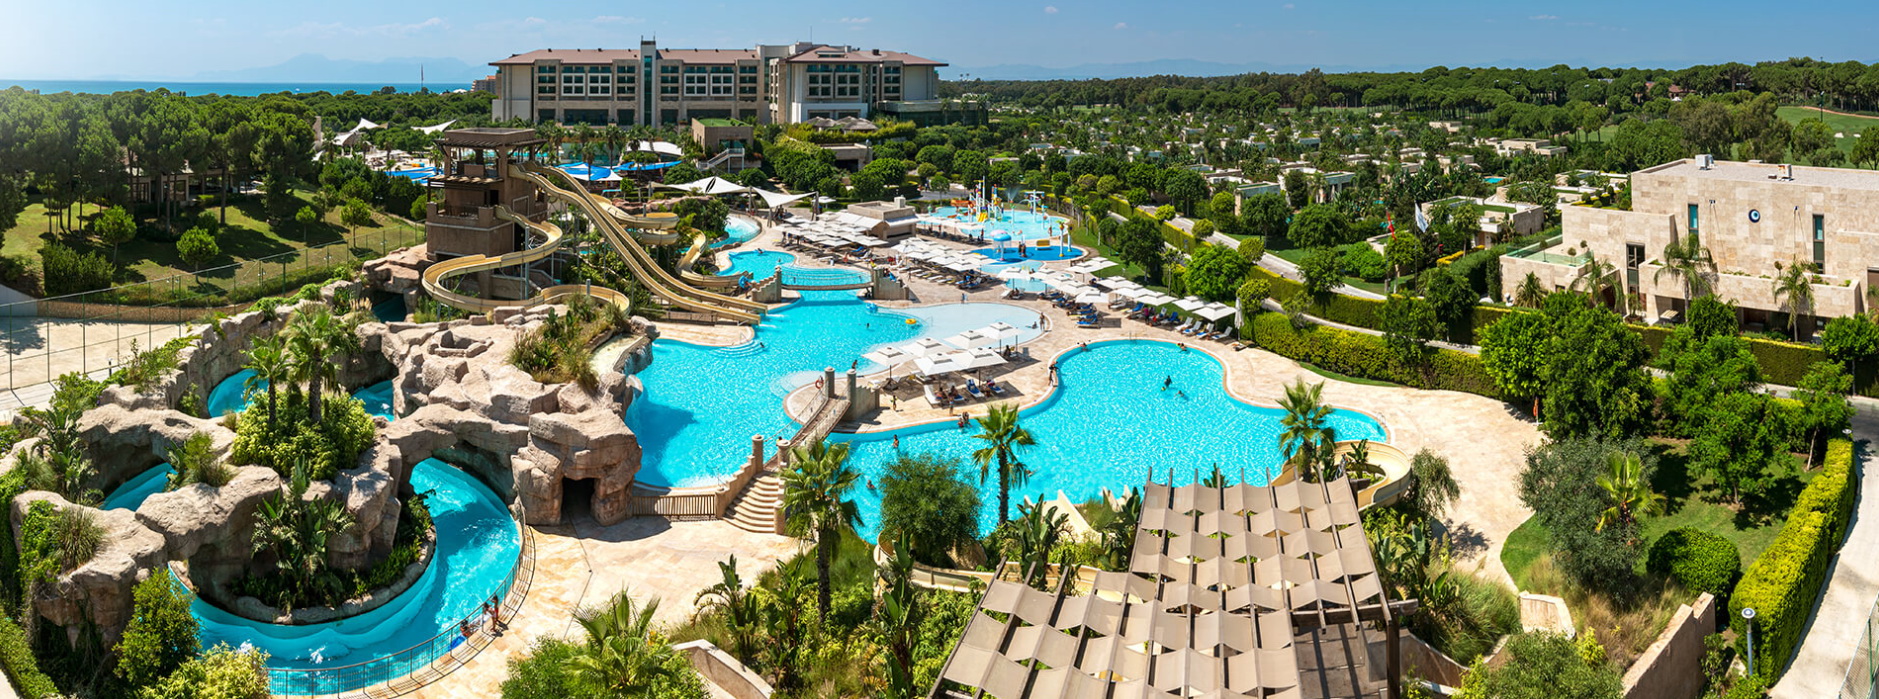 Отель в Турции с подогреваемым бассейном и аквапарком